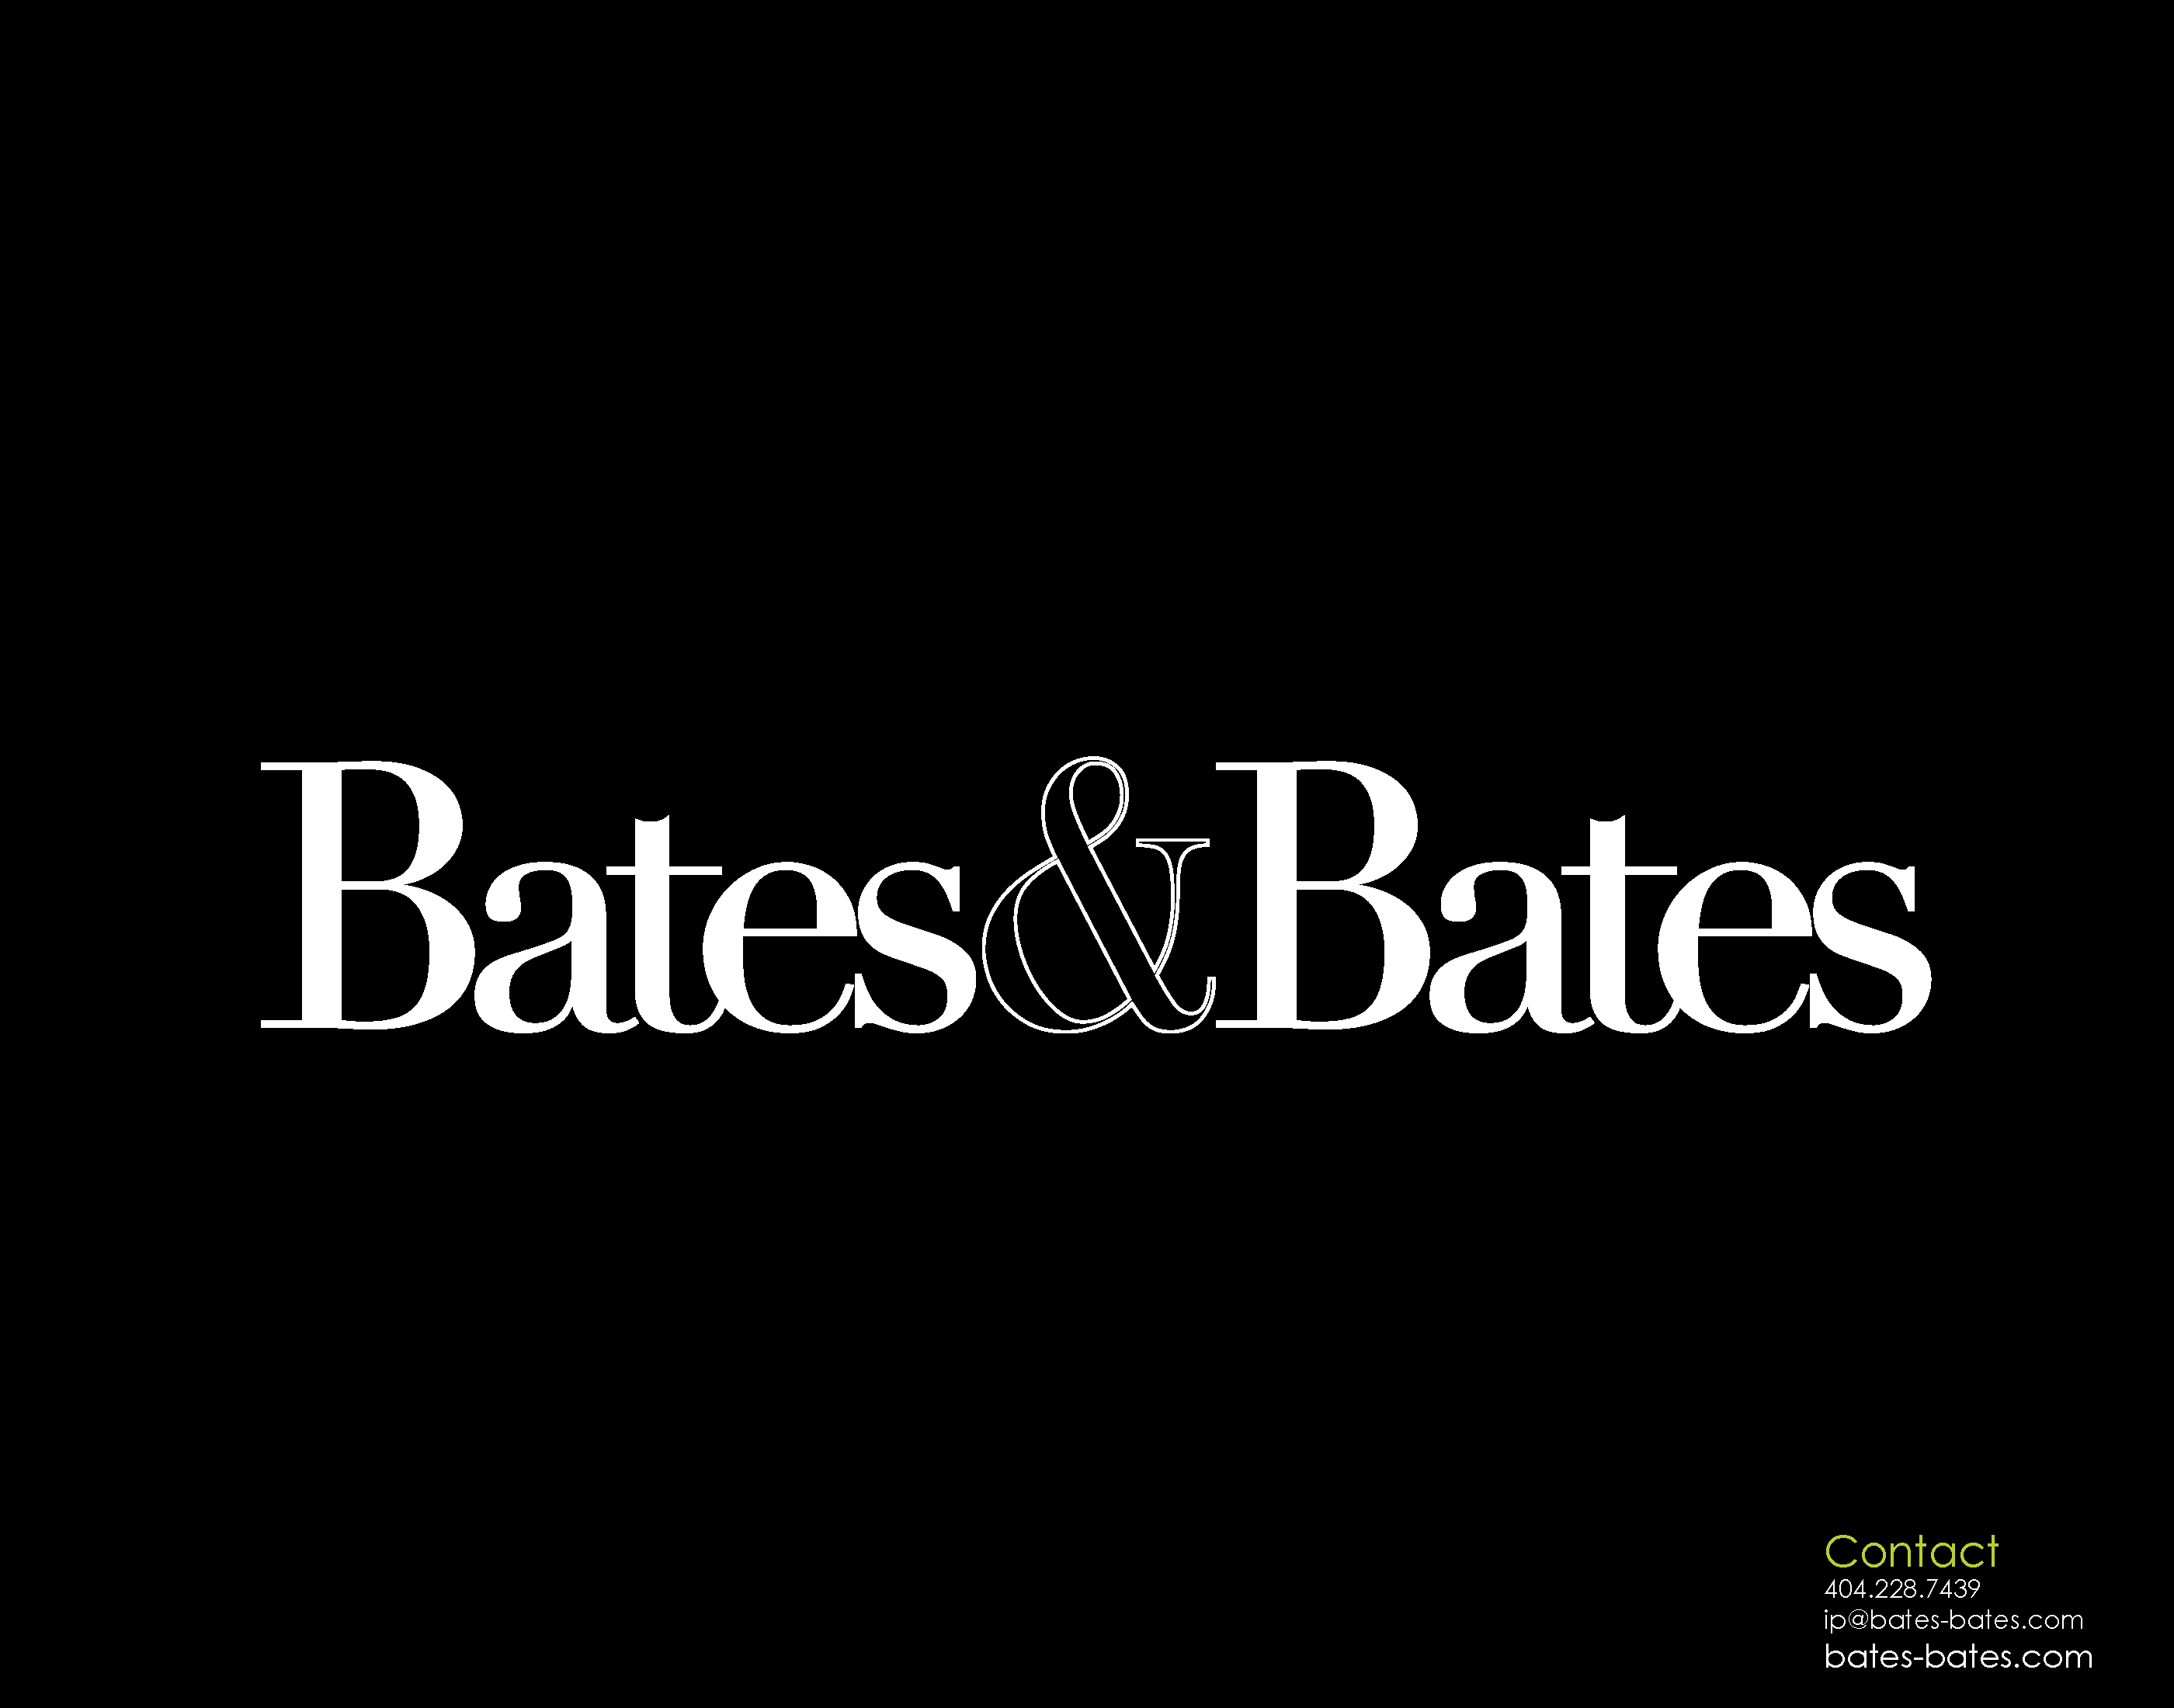 Bates&Bates Brand Design System - fernandosenegal.com